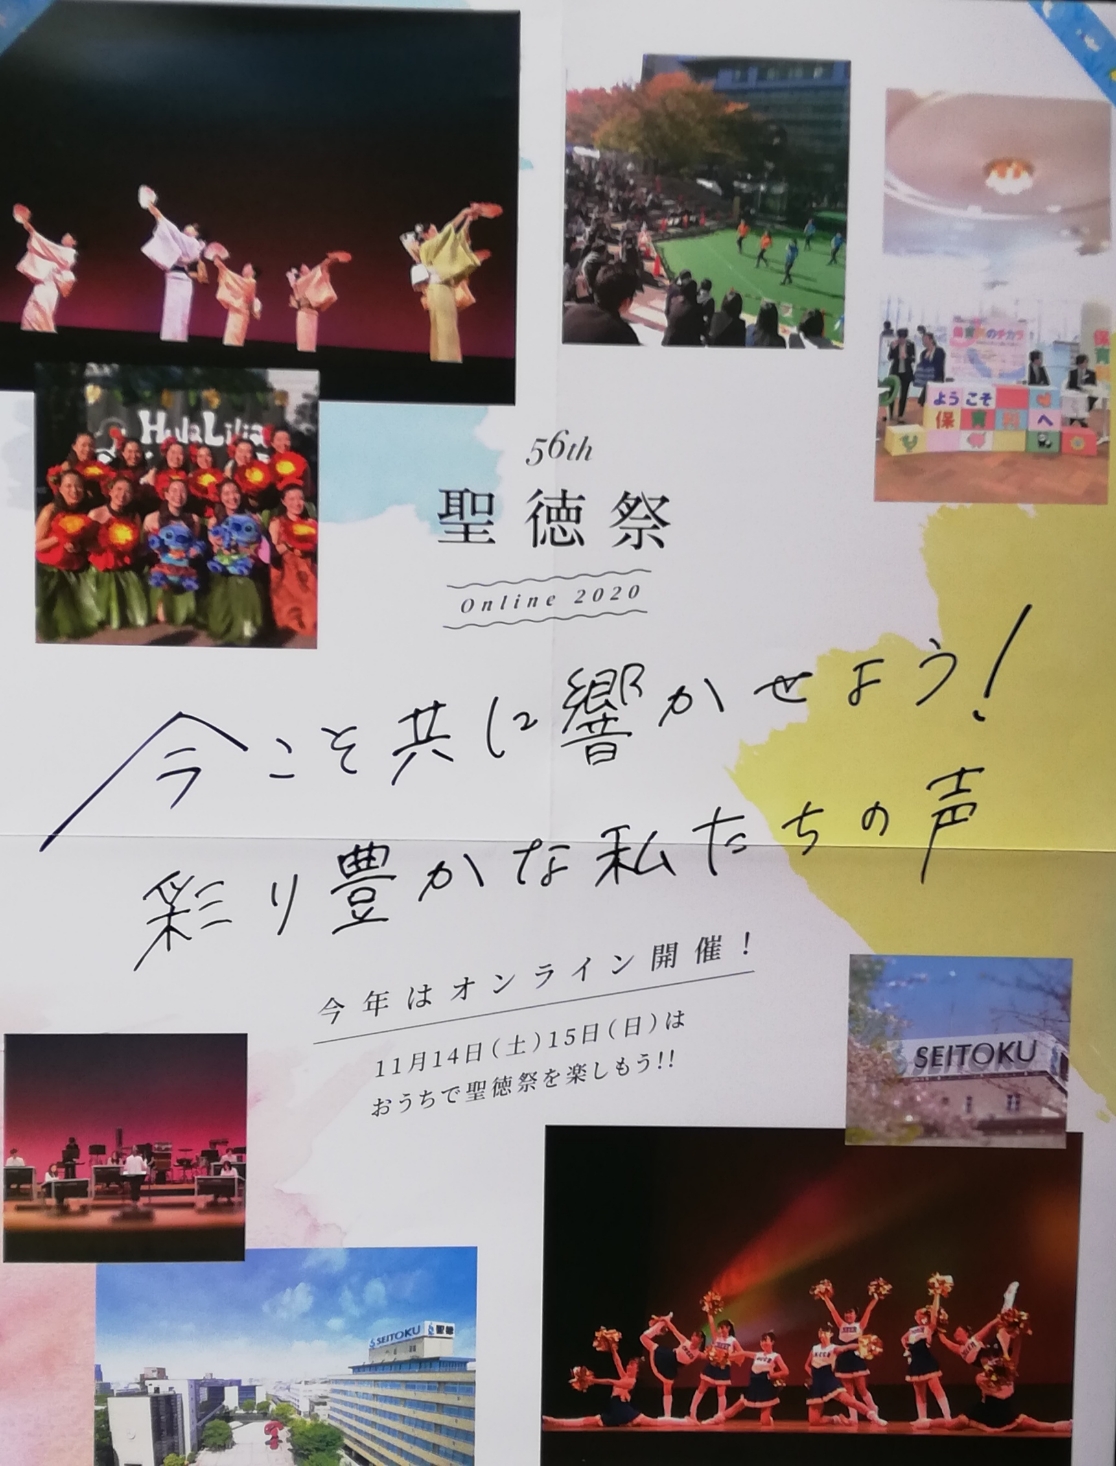 聖徳祭2020松戸市第56回学園祭文化祭